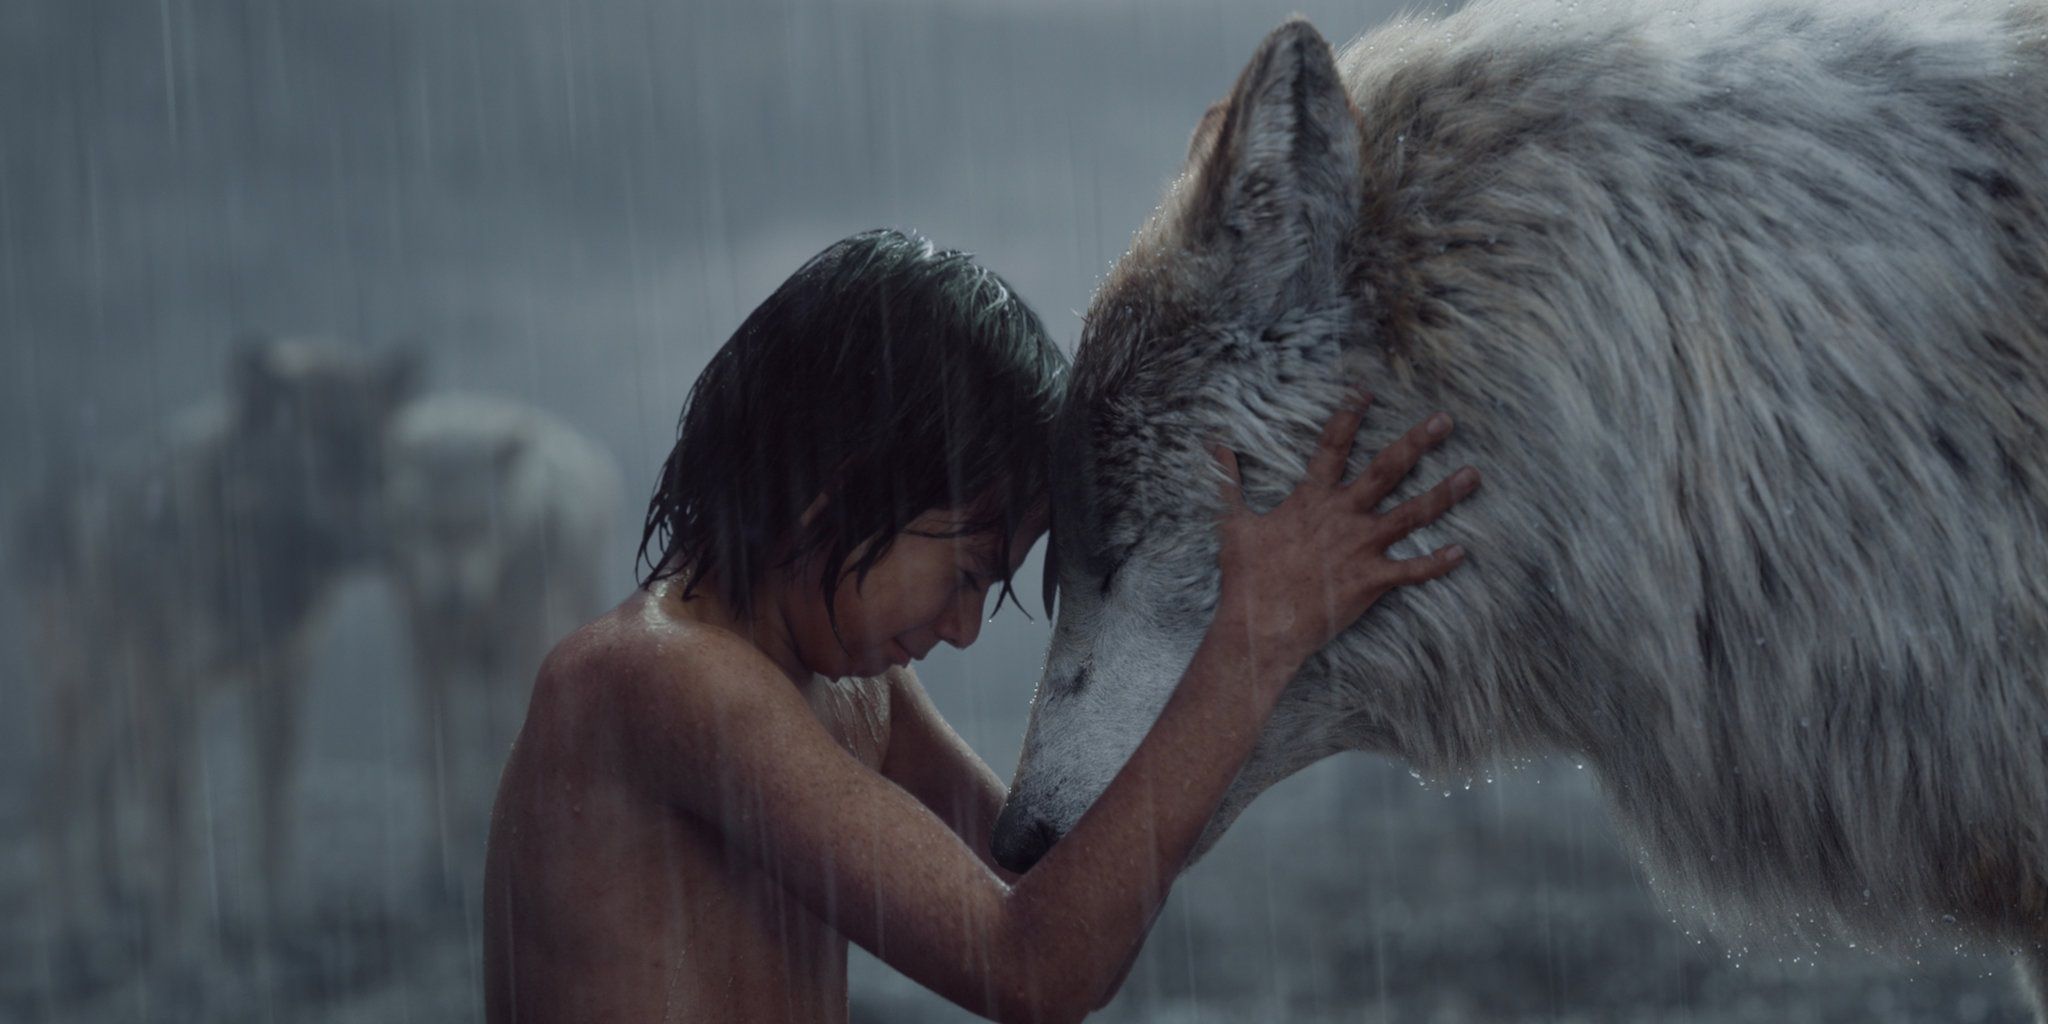 Mowgli and a wolf in The Jungle Book